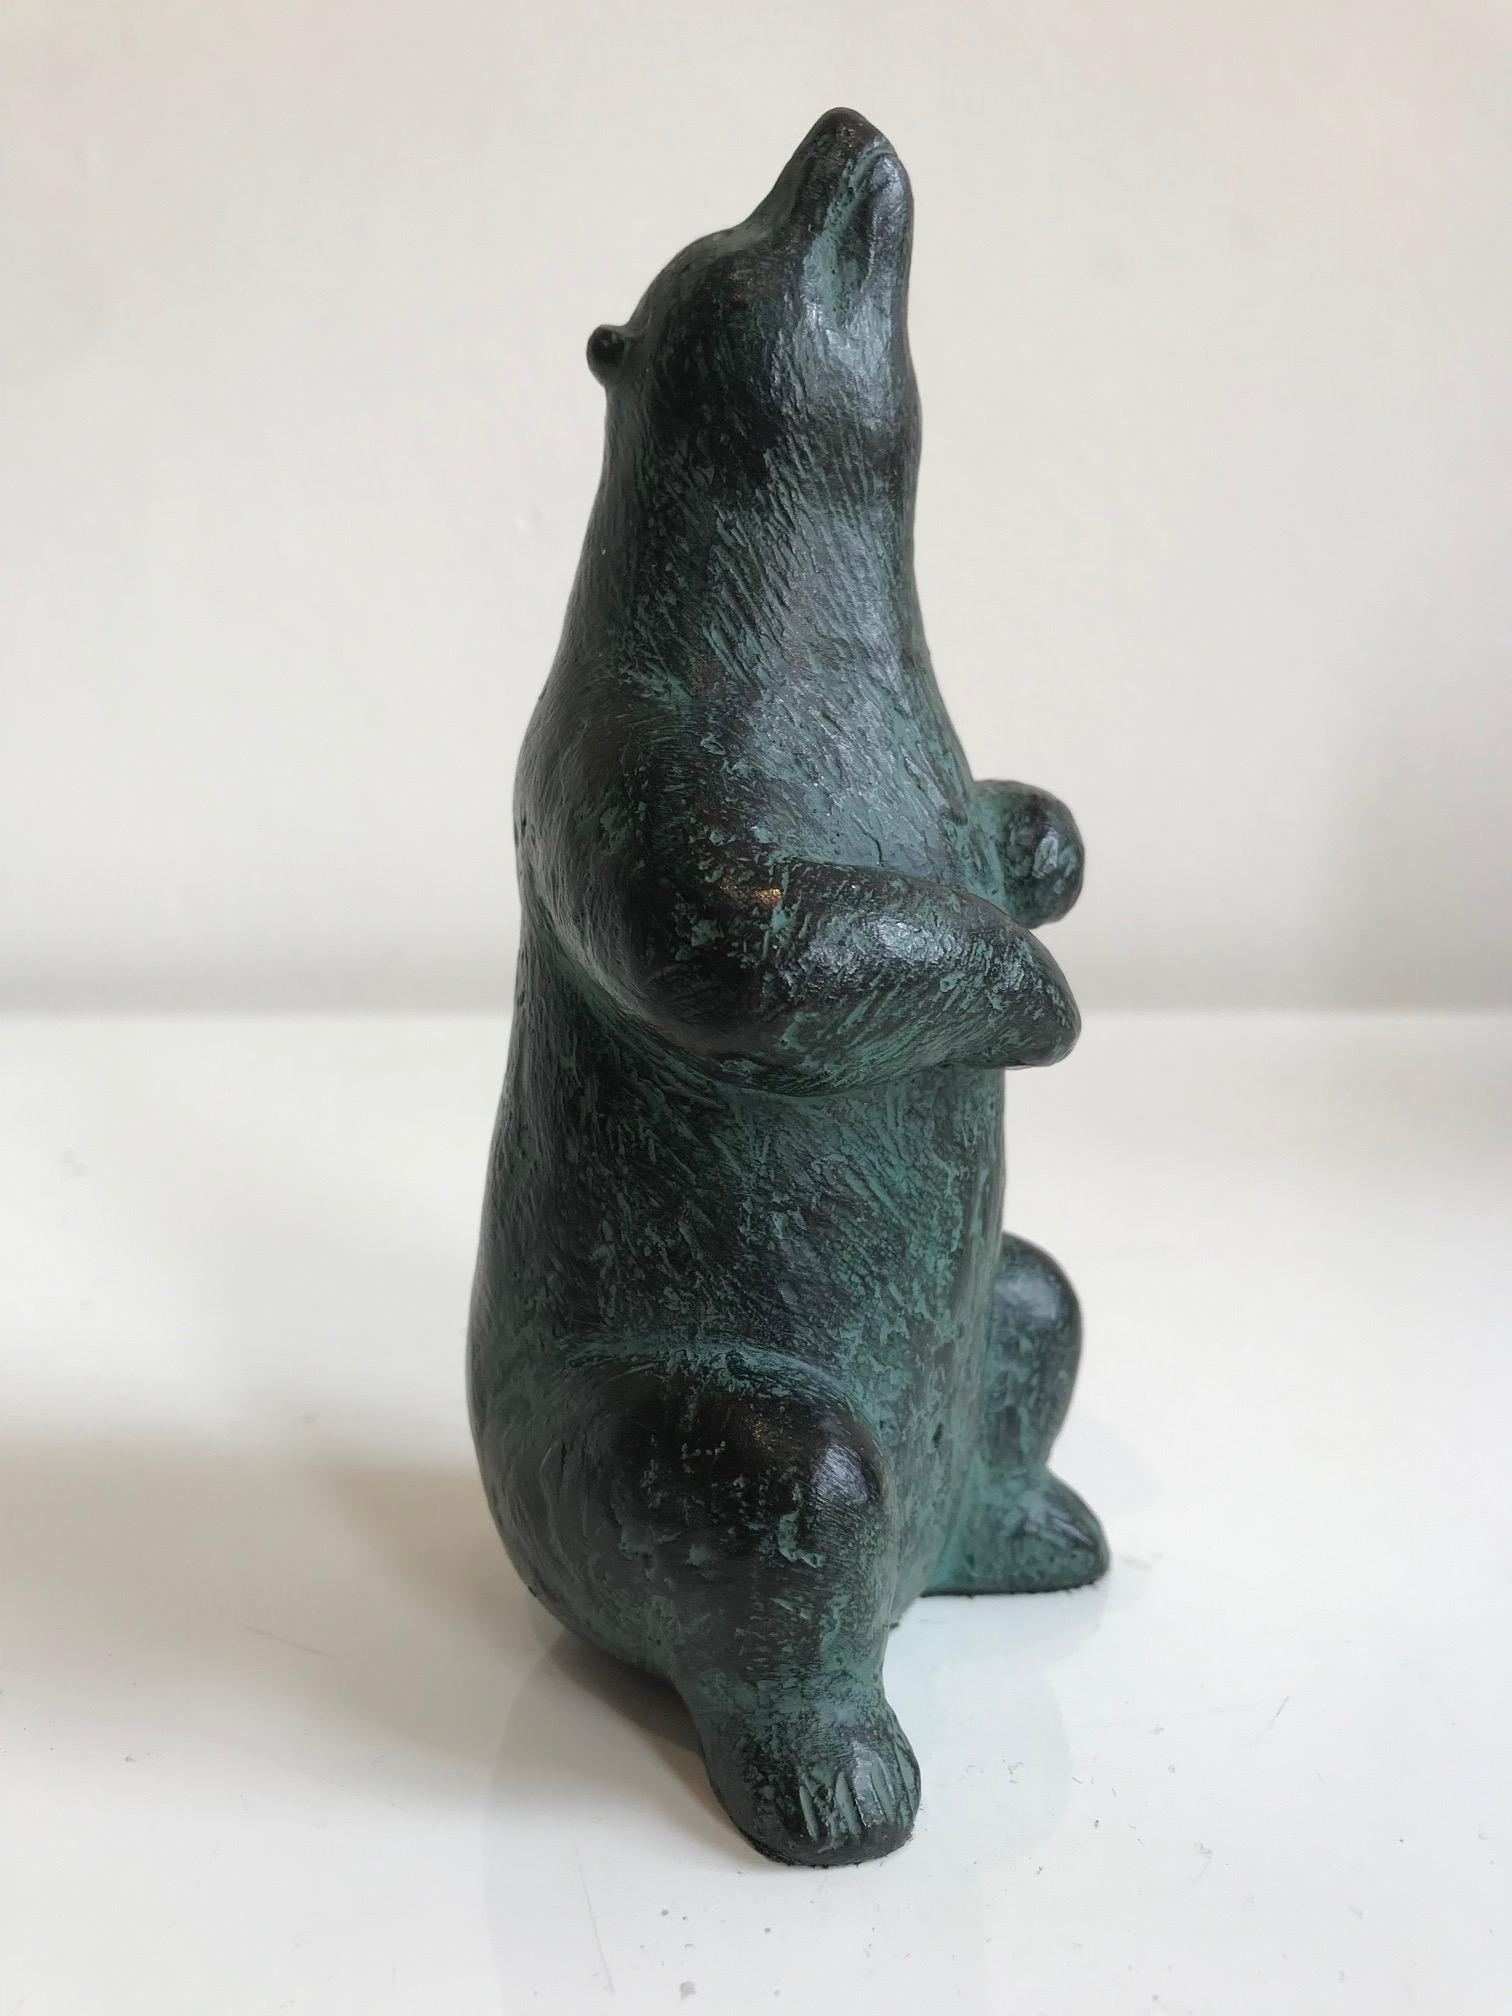 Karin Beek Figurative Sculpture – Was rieche ich?" Zeitgenössische Bronze-Skulptur eines Bären in Grün 